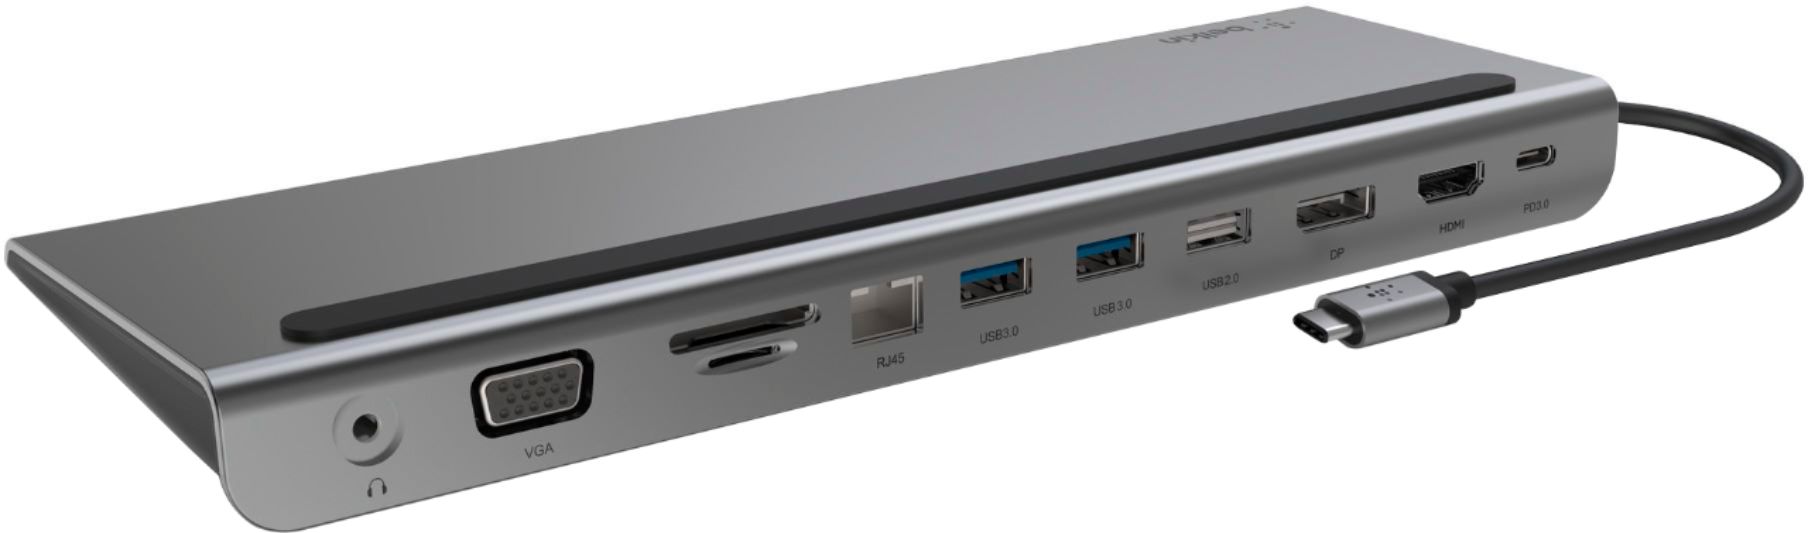 Station d'accueil USB-C multiport 11-en-1 pour PC et Mac